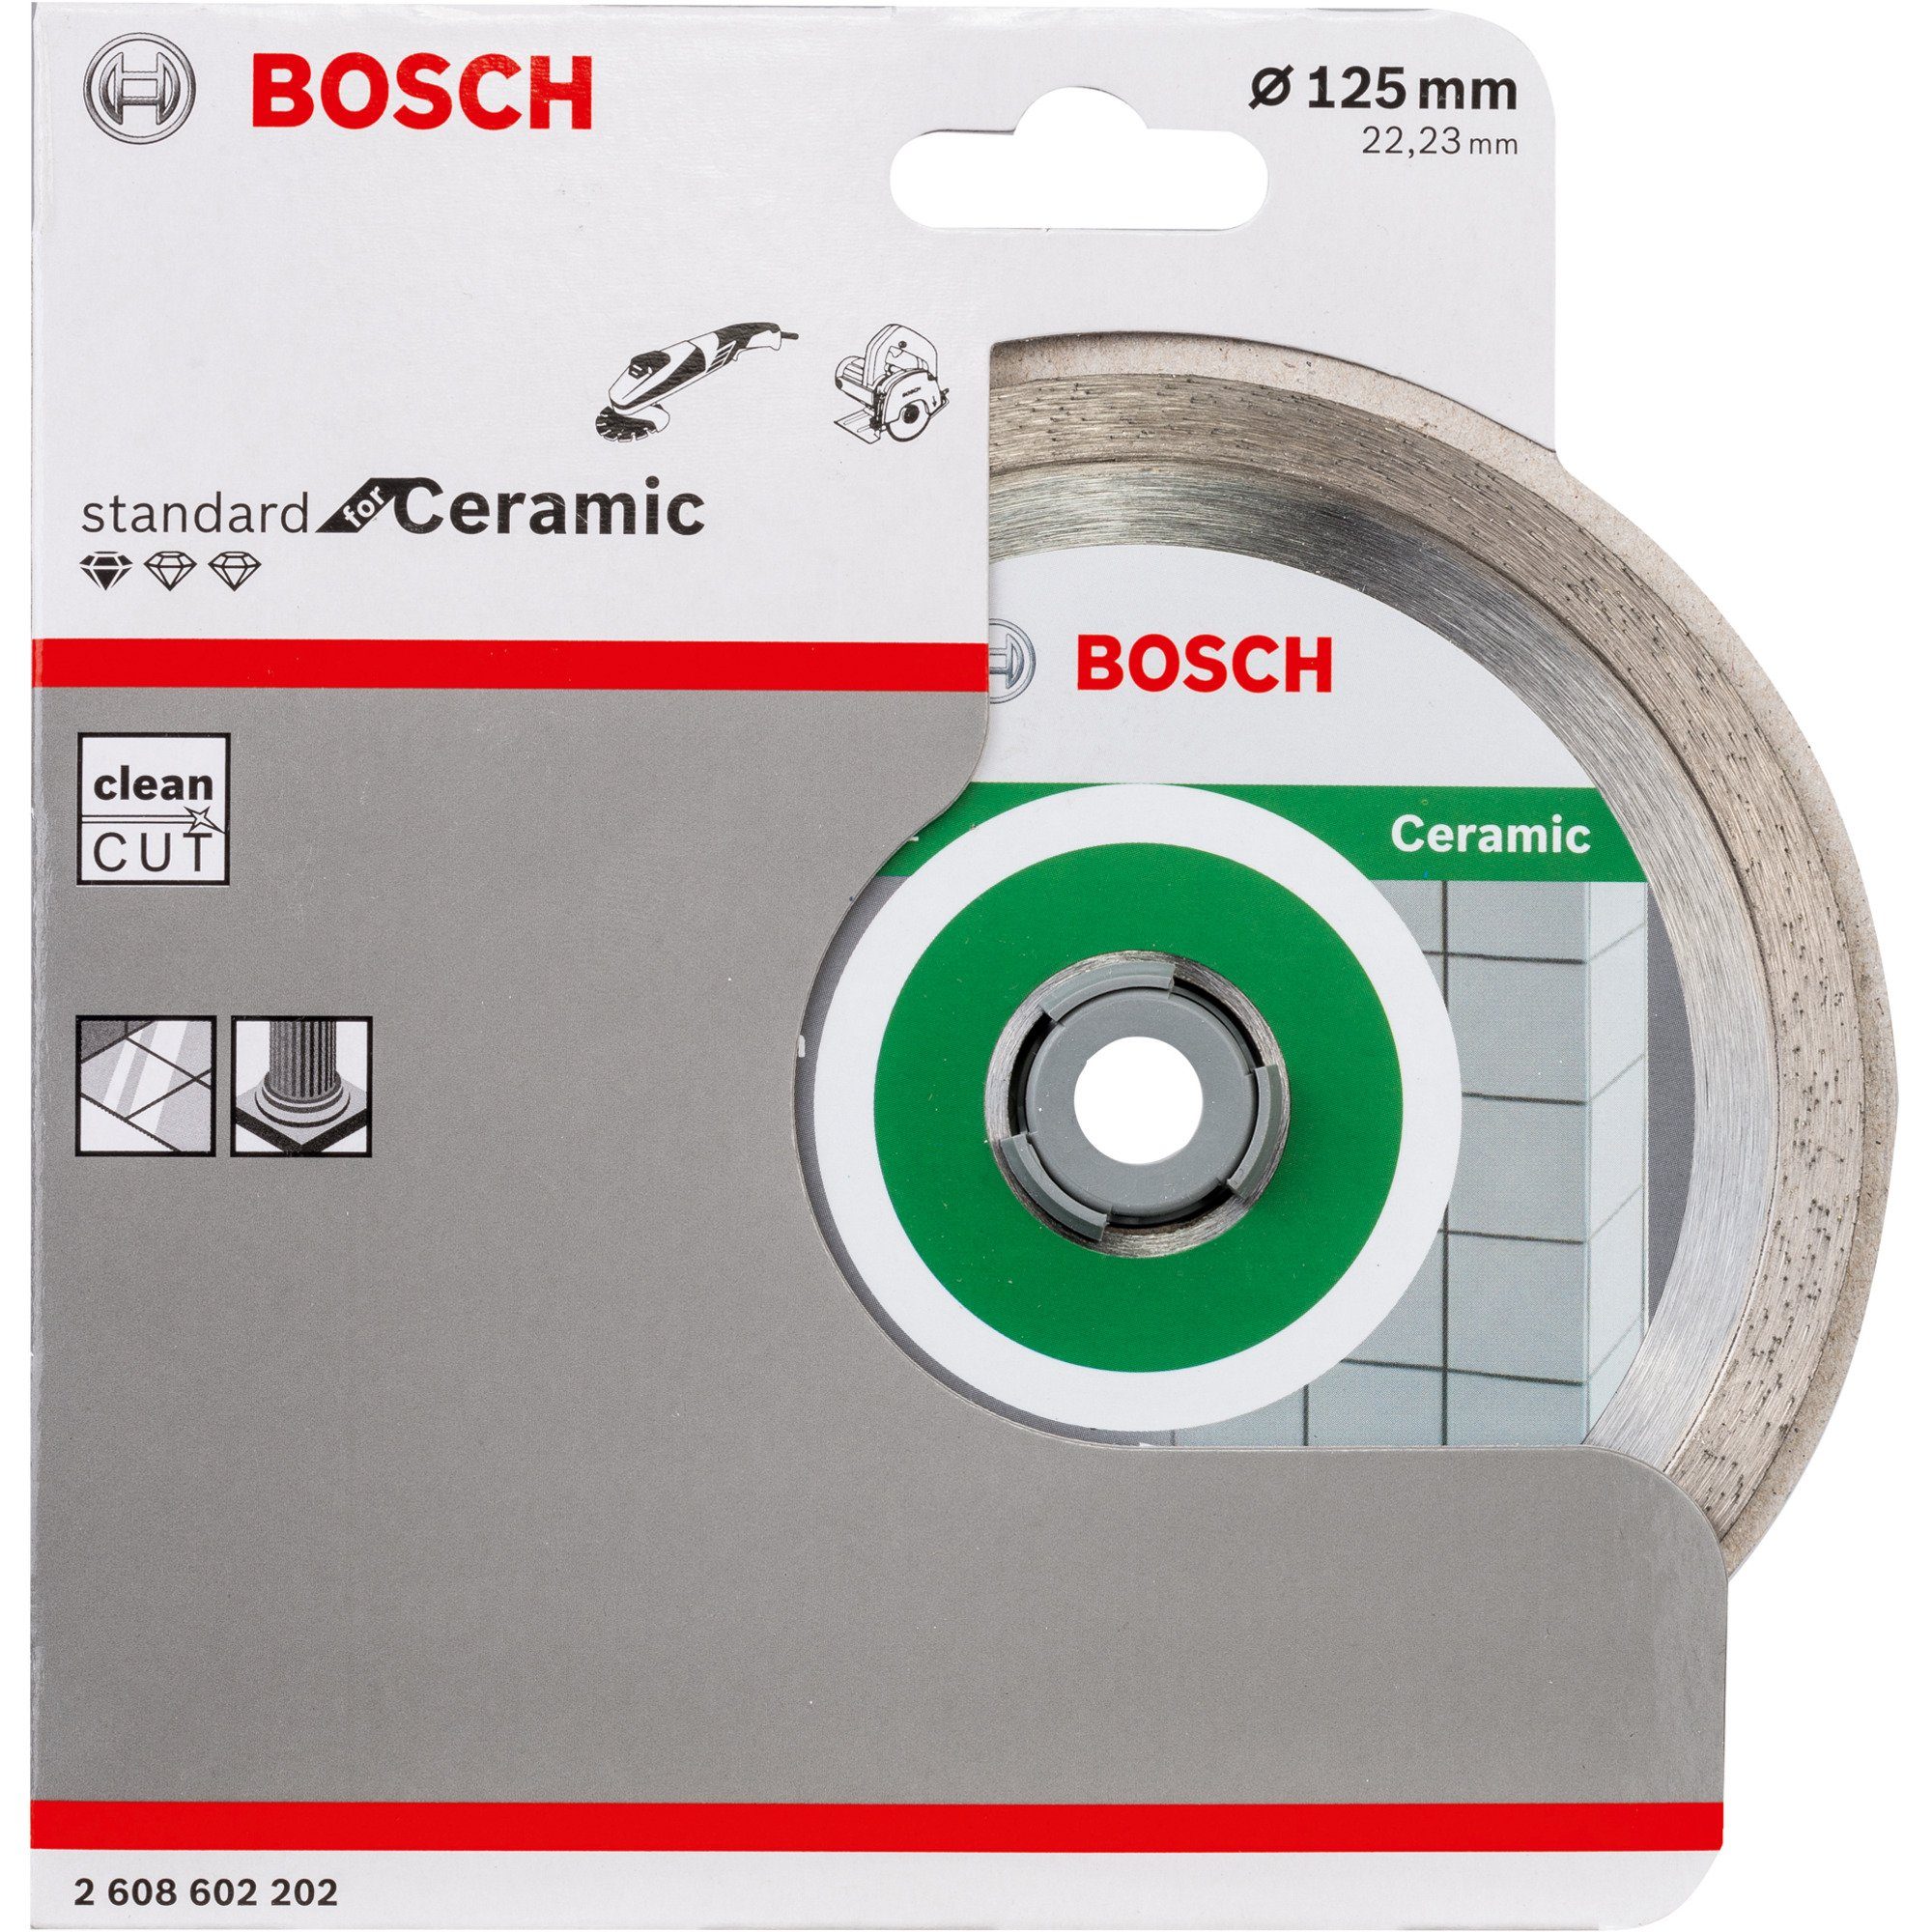 BOSCH Trennscheibe Bosch Professional Diamanttrennscheibe Standard